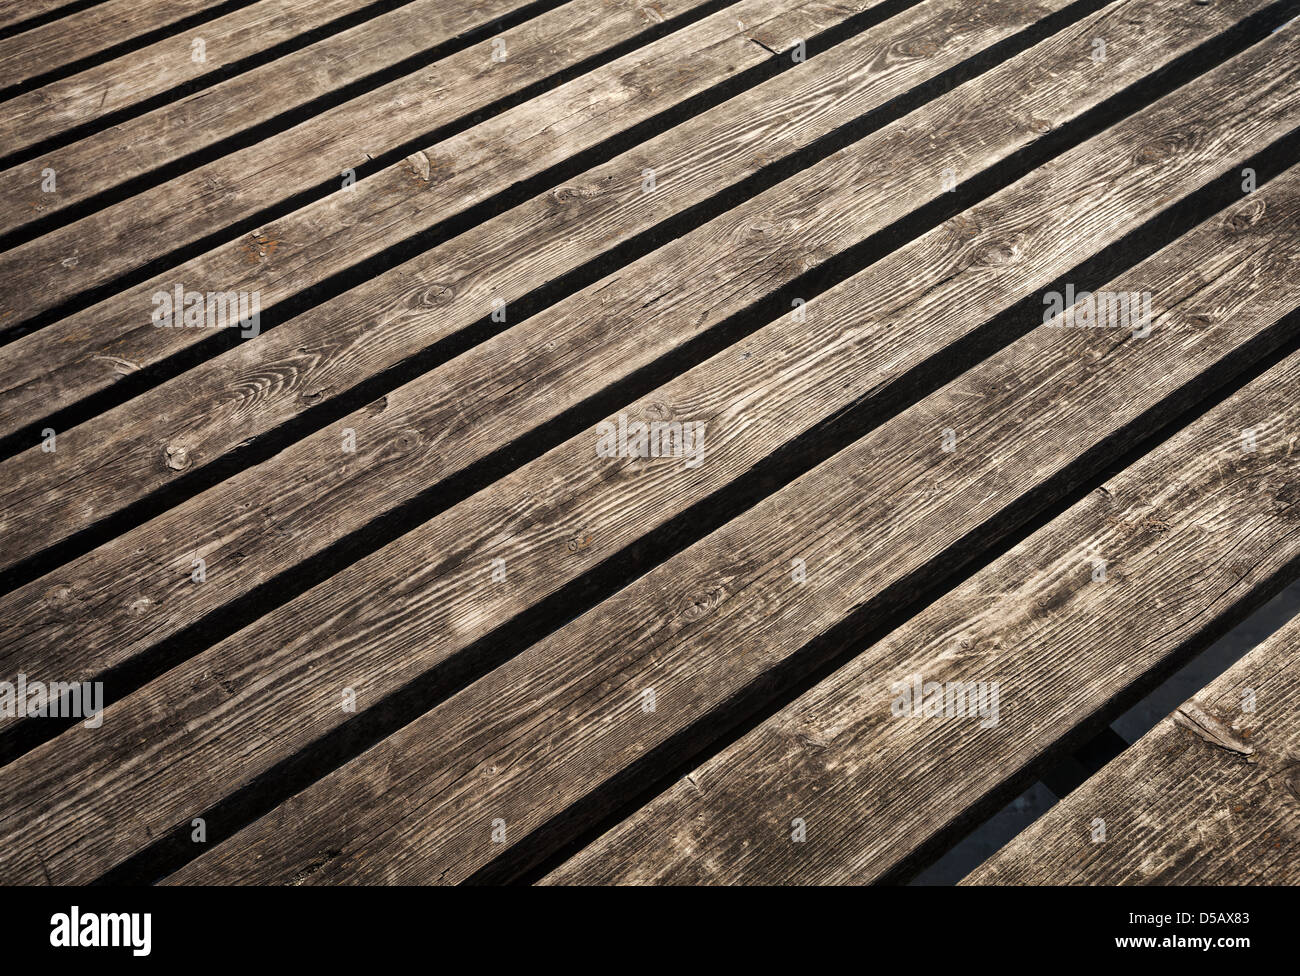 Ungefärbt verwittert braunen Holz Futter Bretter Hintergrund Textur Stockfoto